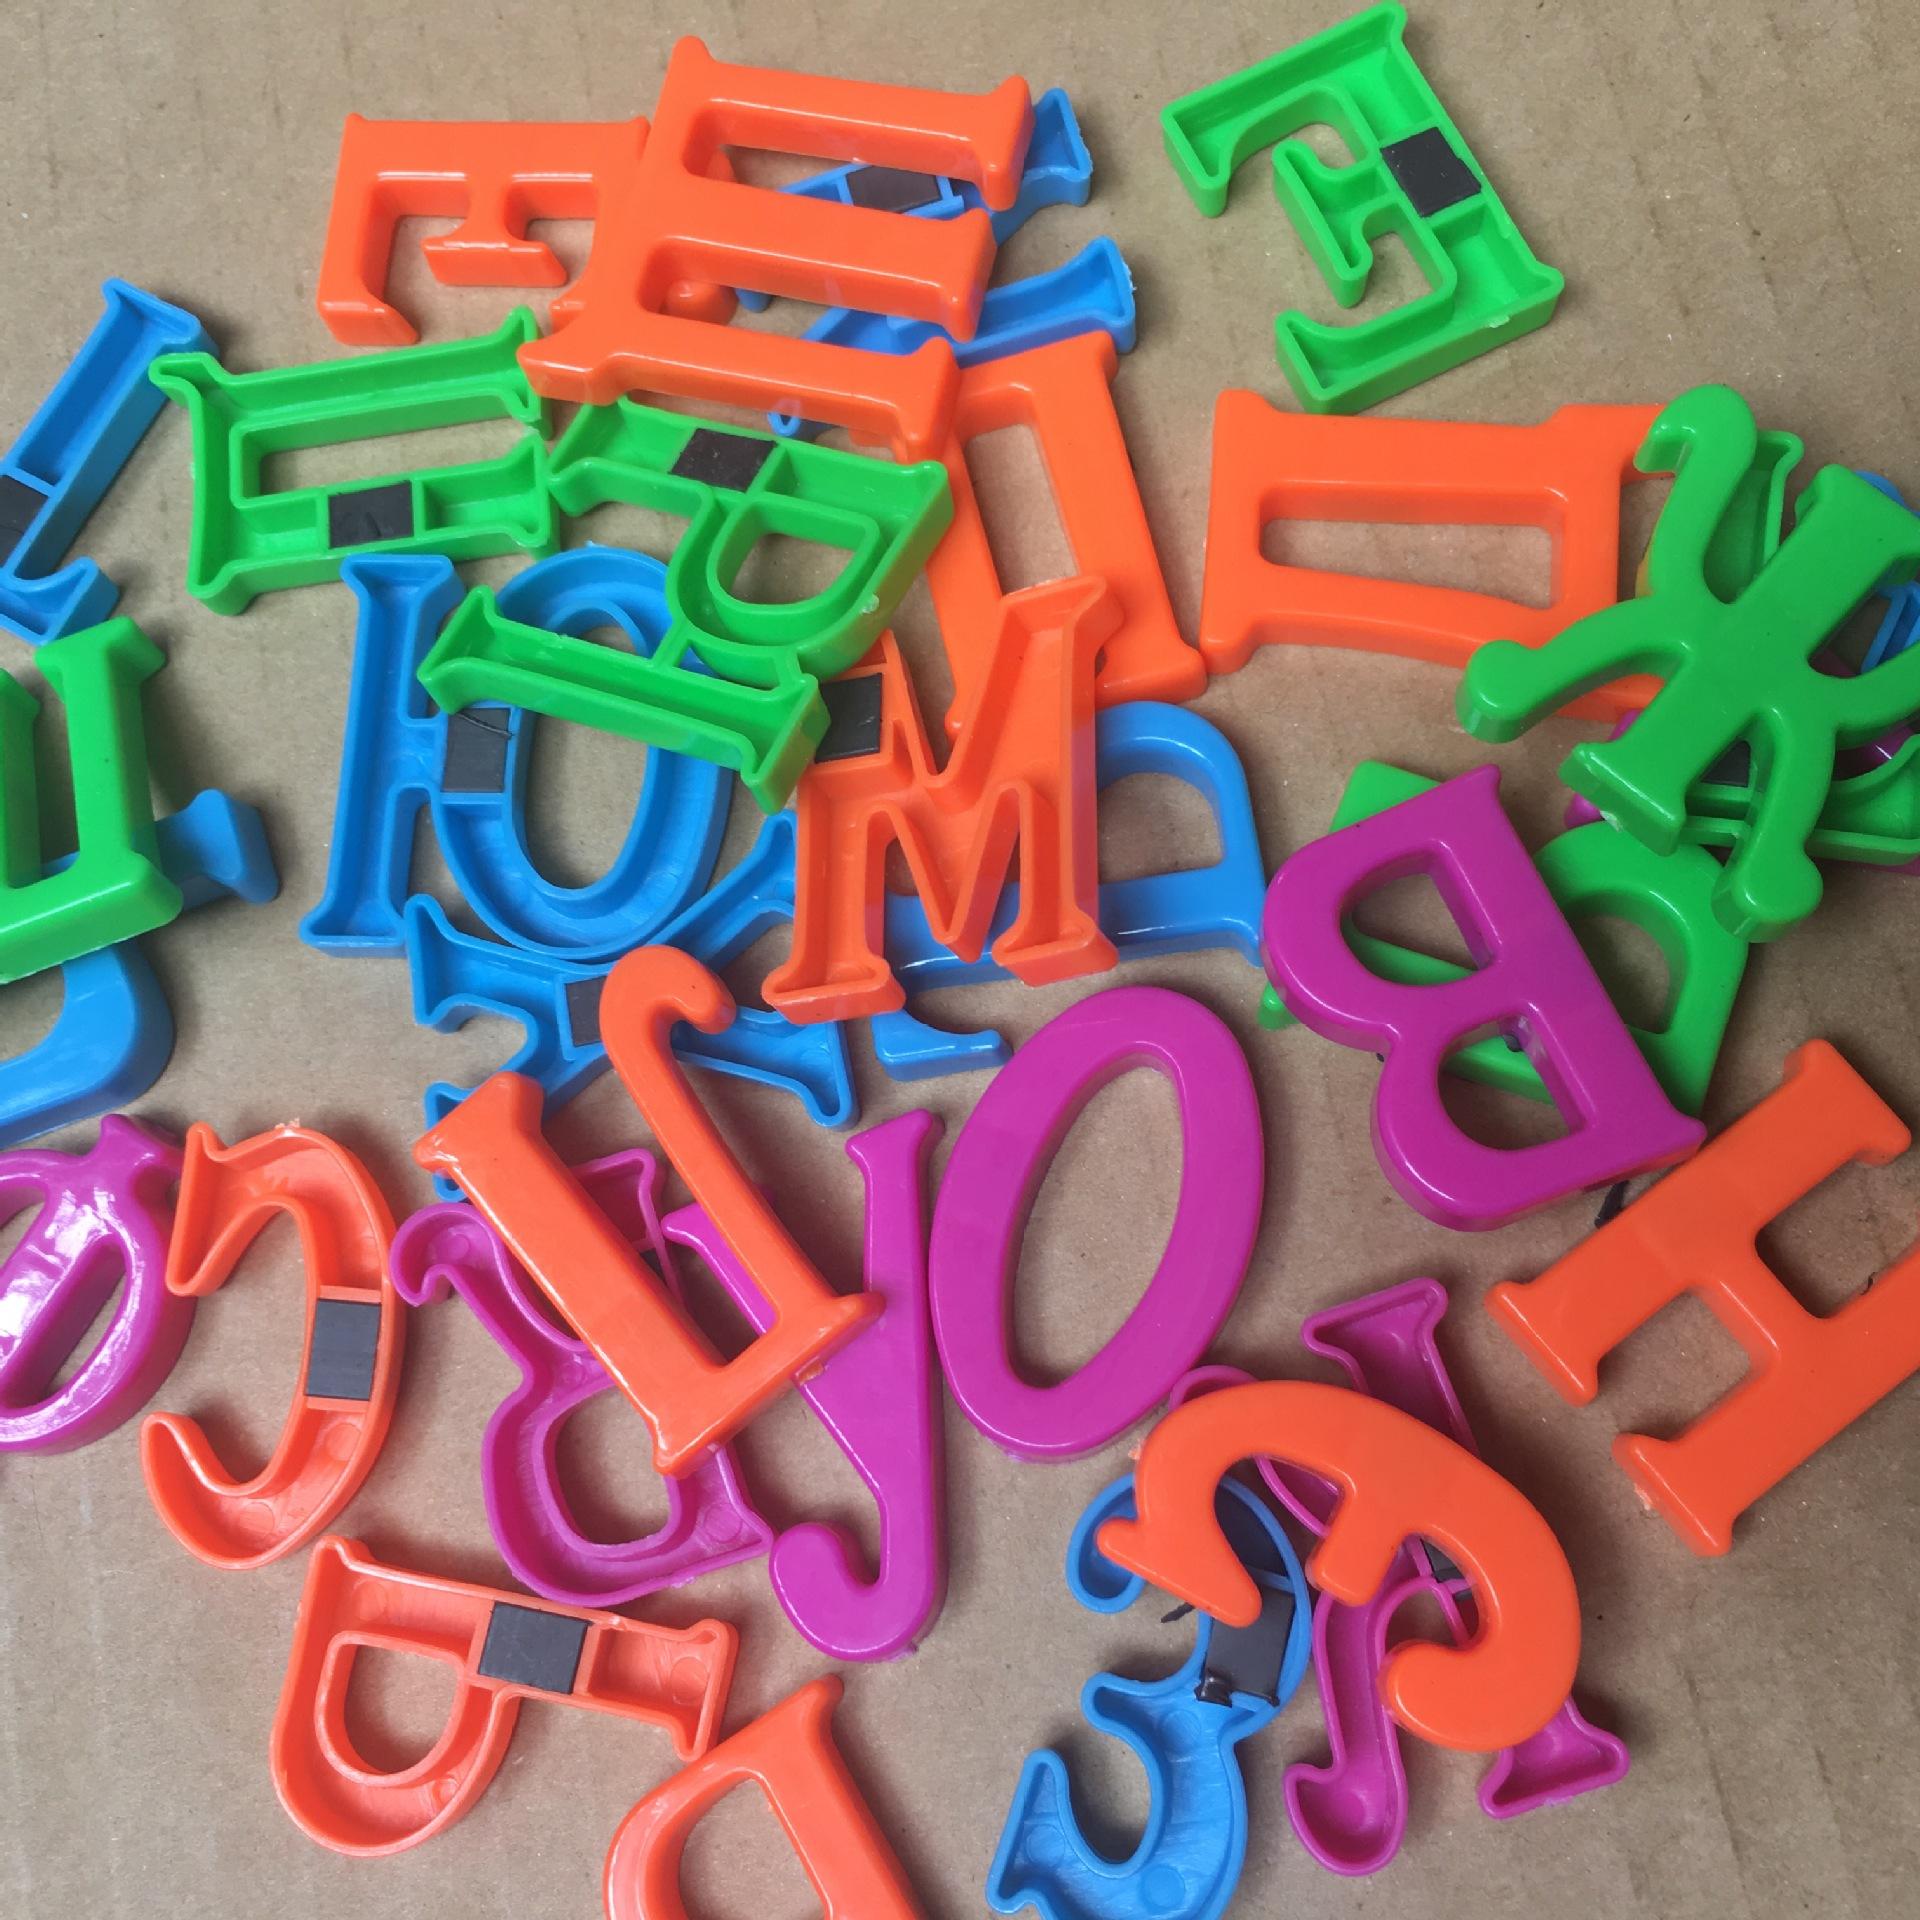 33 Stks/set Russische Alfabet Letter Magnetische Kid Educatief Speelgoed Koelkast Magneet